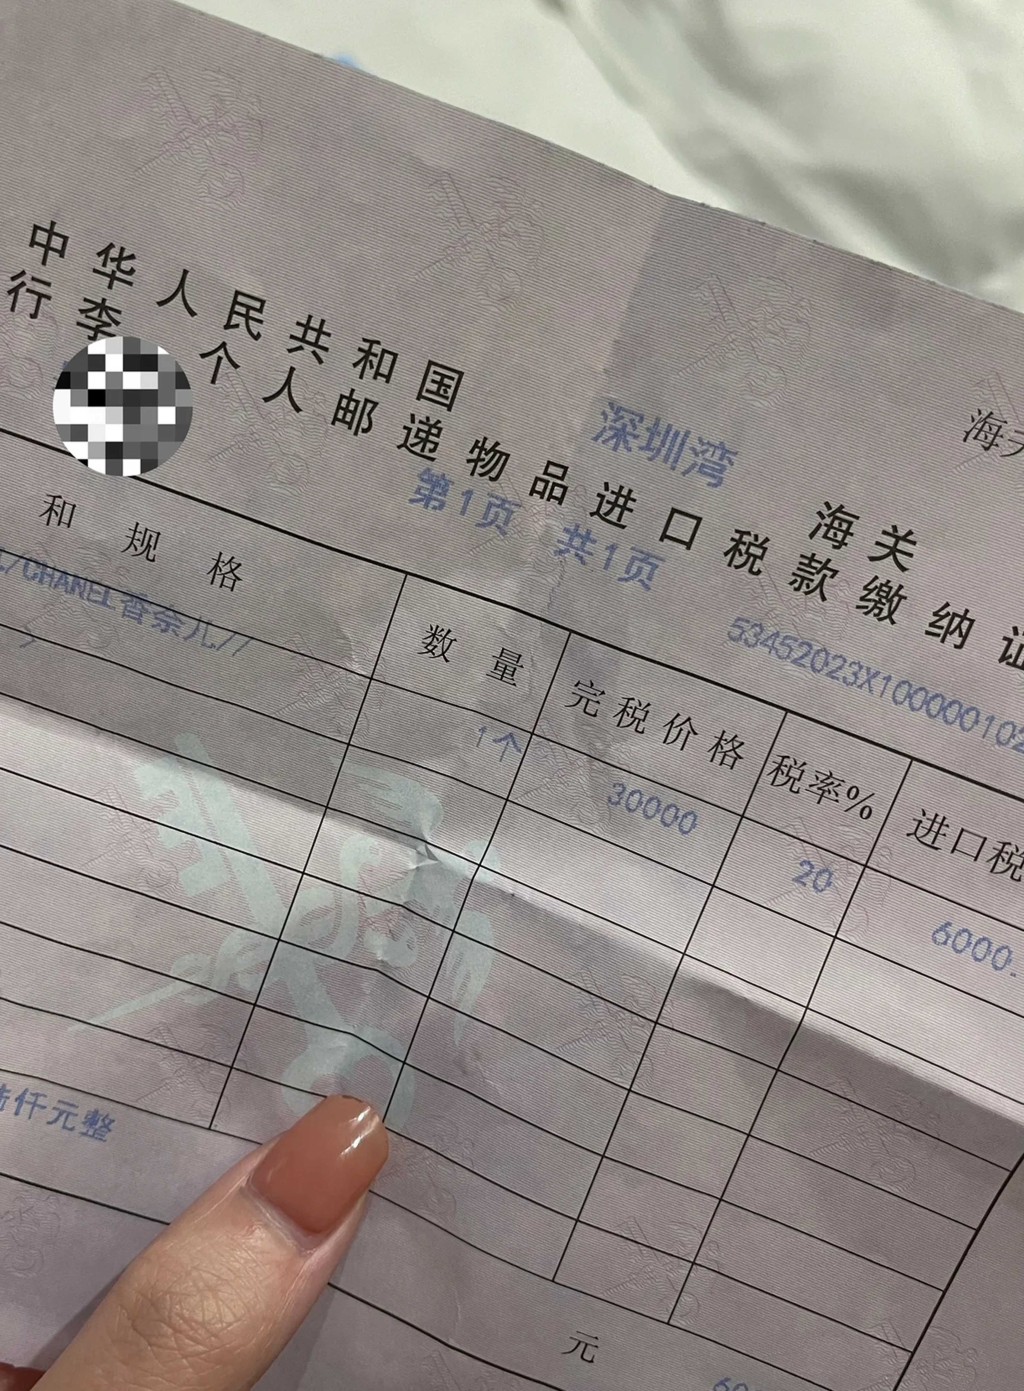 有女士在本港购买了名牌手袋，被深圳海关人员发现，需缴税6000元人民币。 网上图片